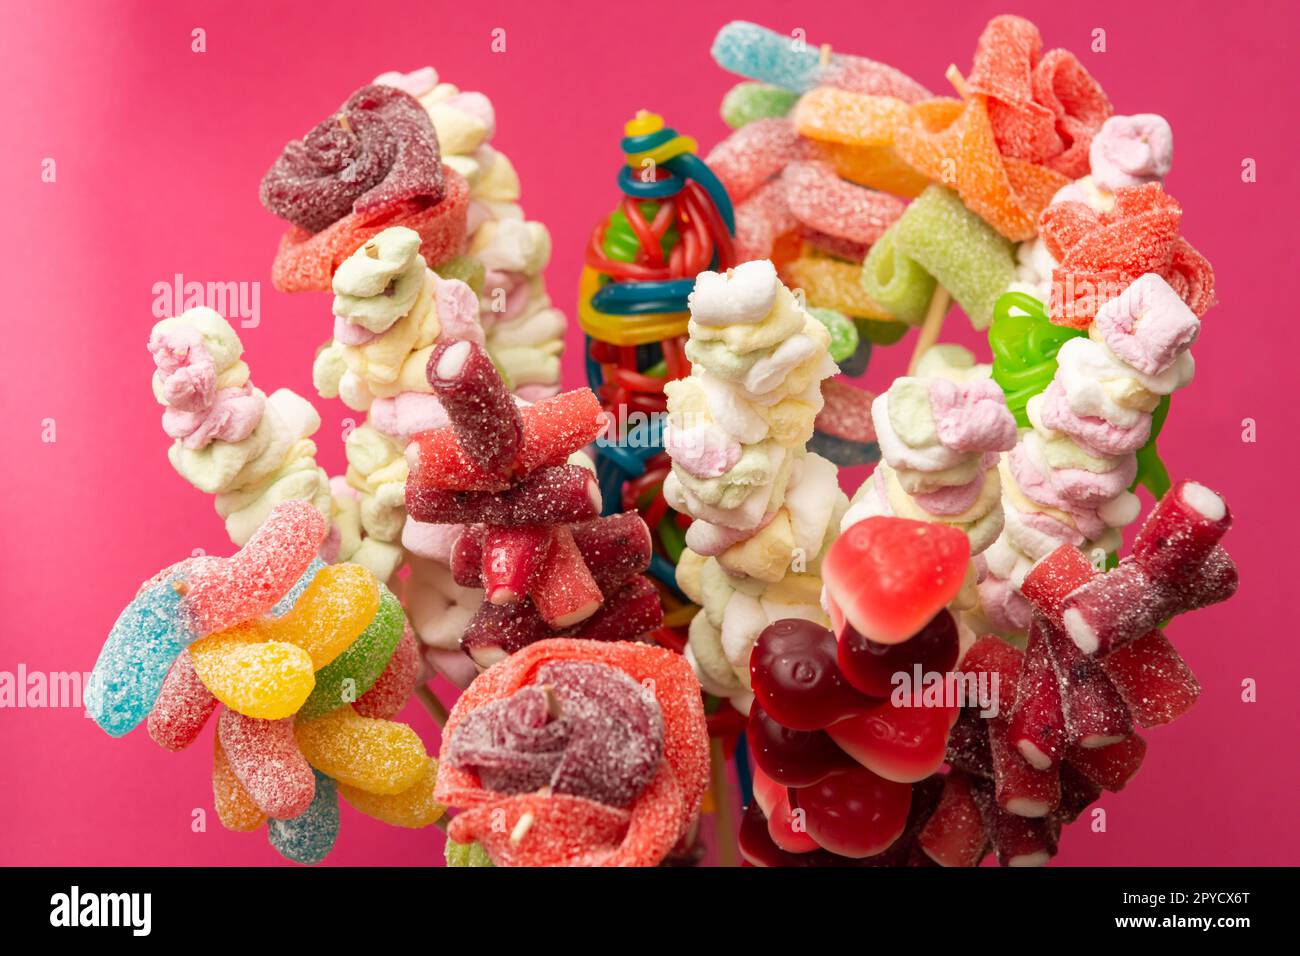 Variazione di frutta colorata gengive dolci spiedato orsacchiotto gommoso orsi marshmallow su spiedini di legno isolato su uno sfondo rosso magenta Foto Stock